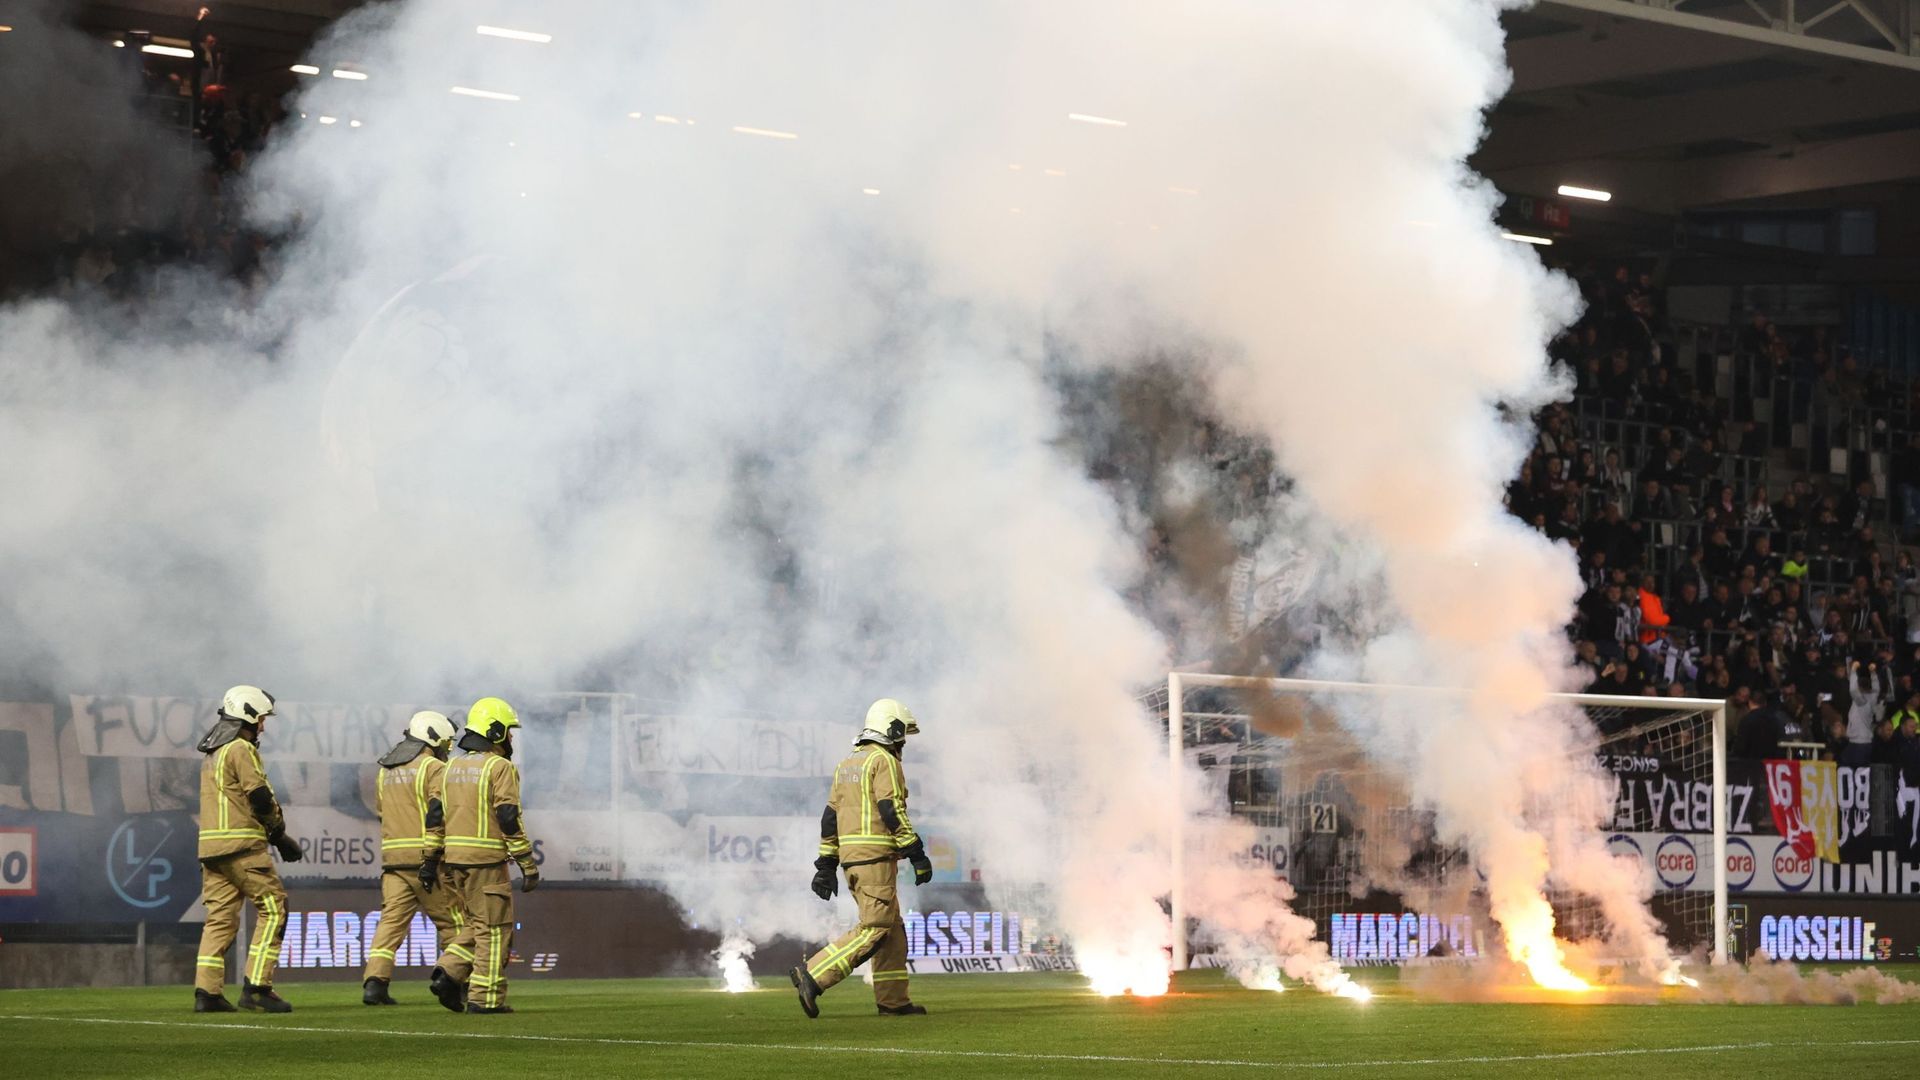 Le match Charleroi – Malines avait été définitivement arrêté après que le lancer de fumigènes des supporters carolos sur la pelouse.